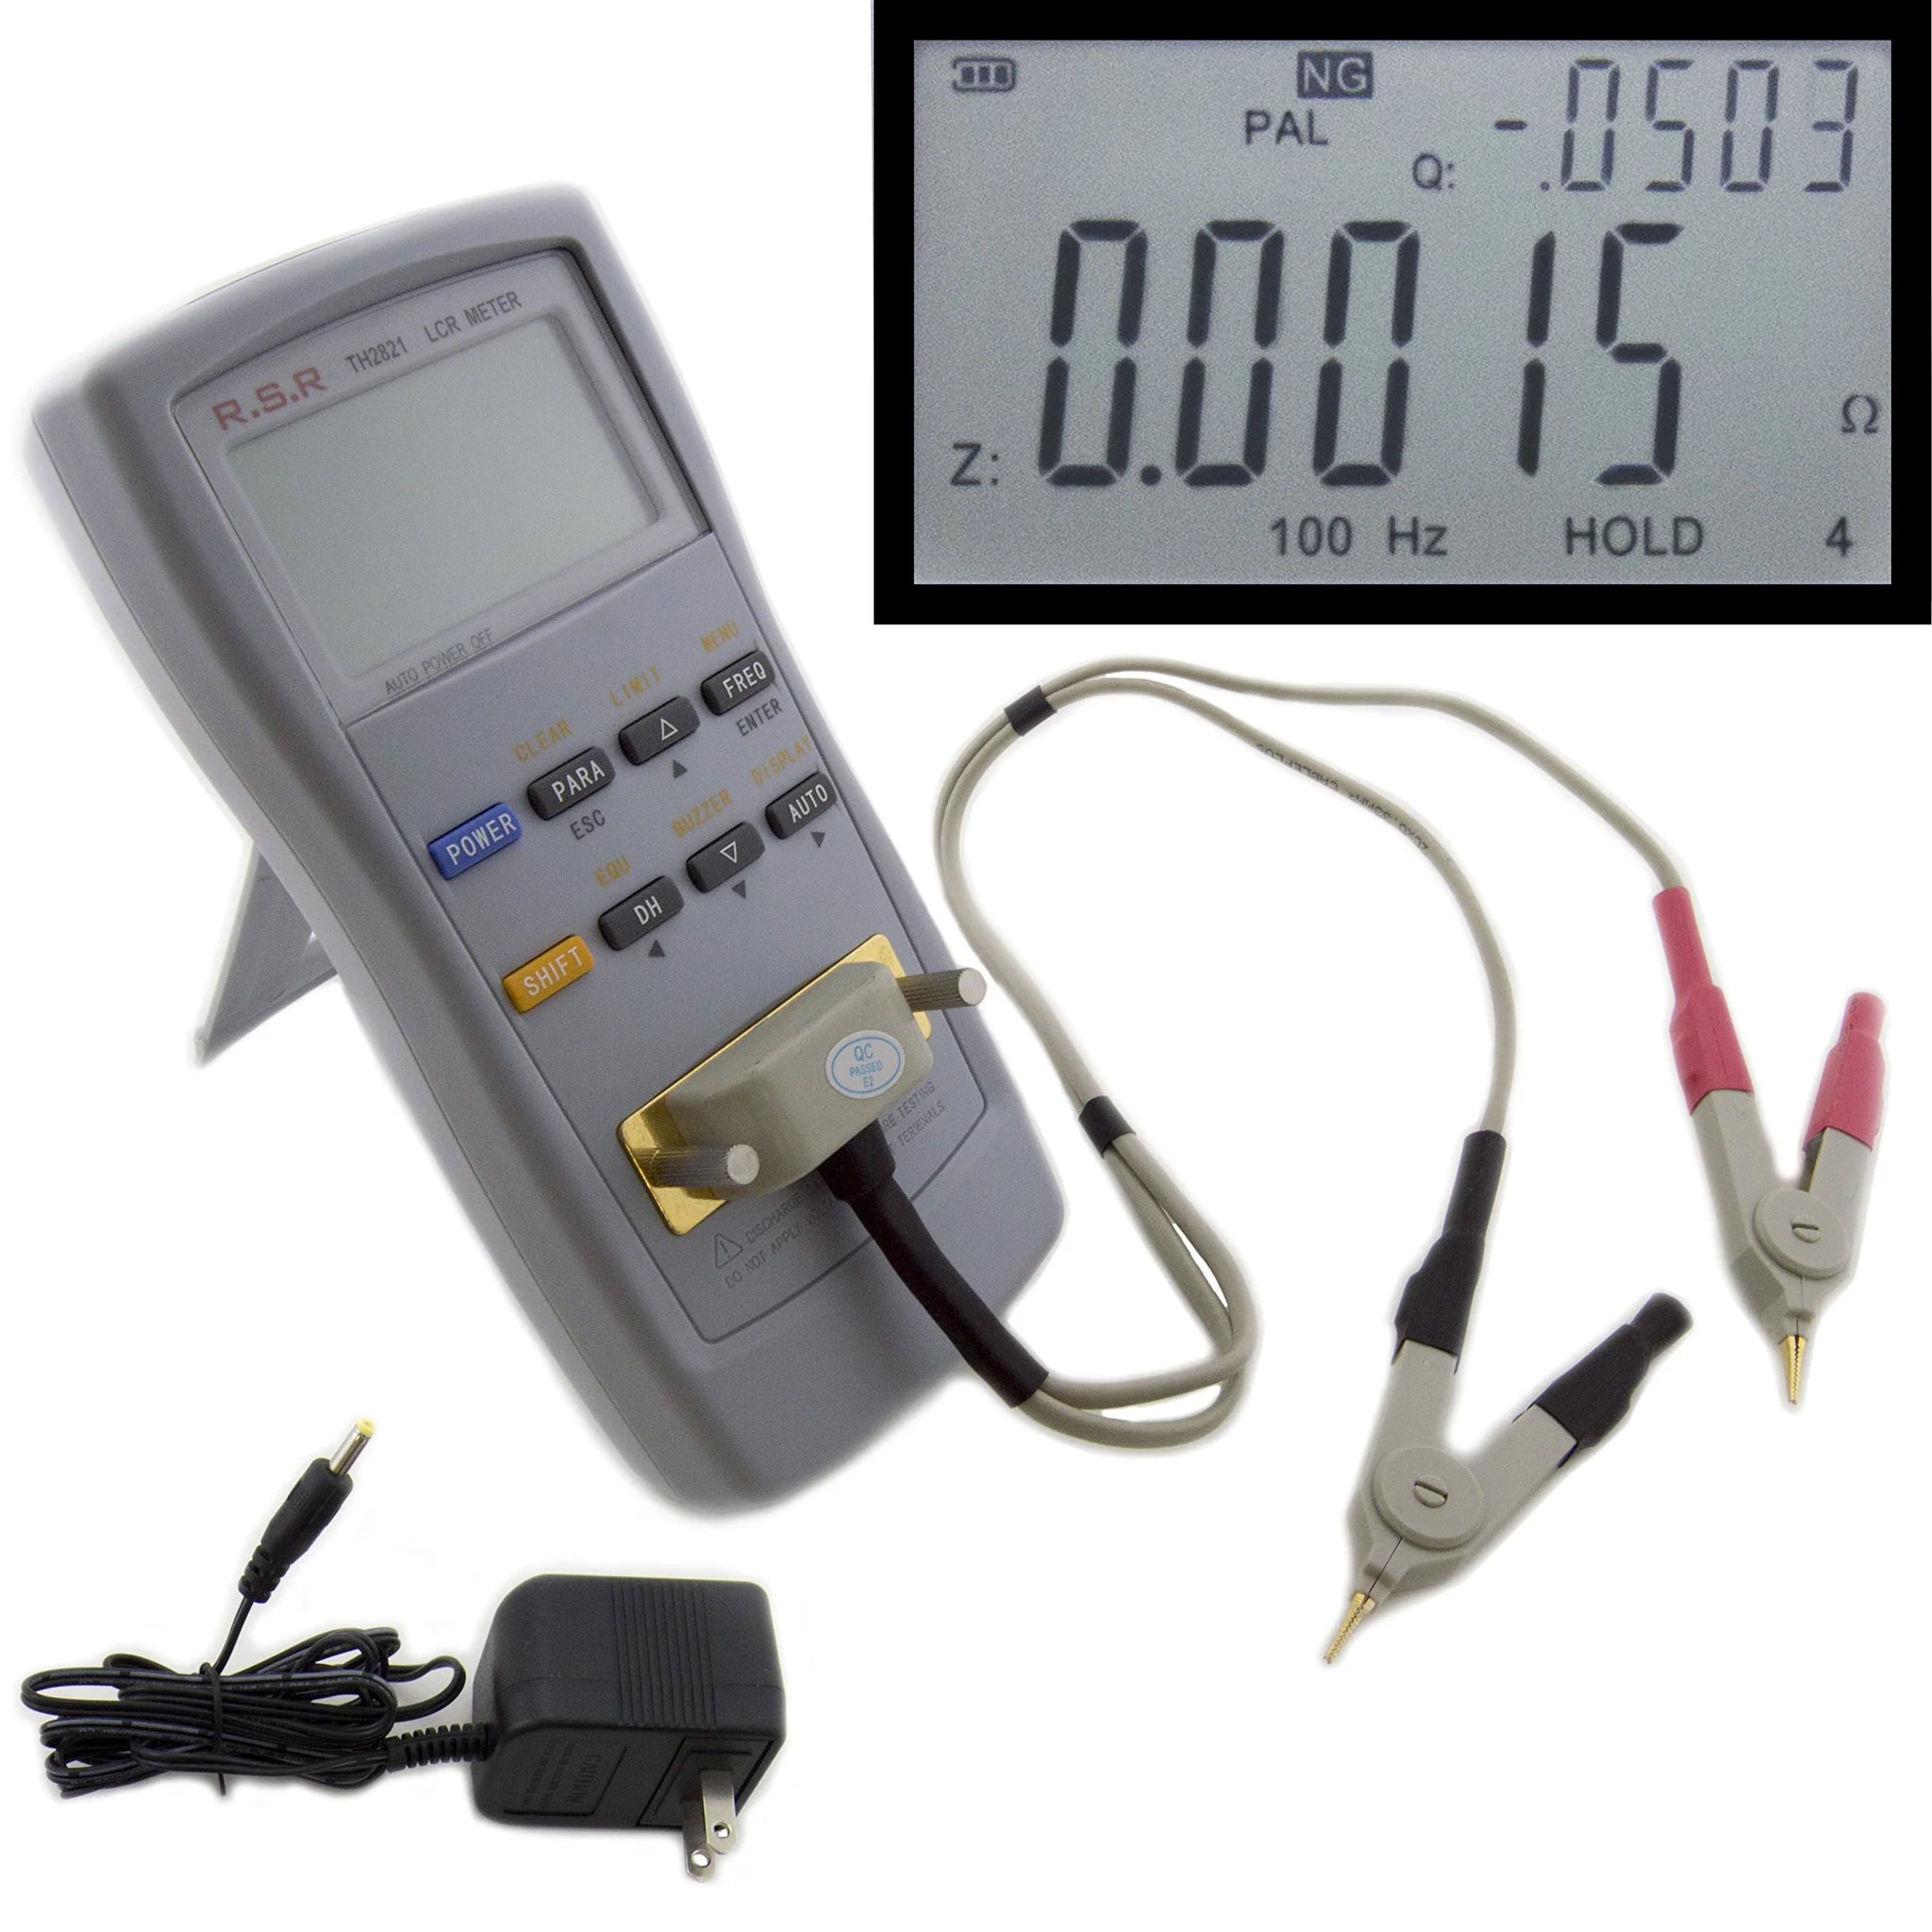 LCR Meter - Test Frequencies: 100Hz, 120Hz, 1KHz Test Parameters